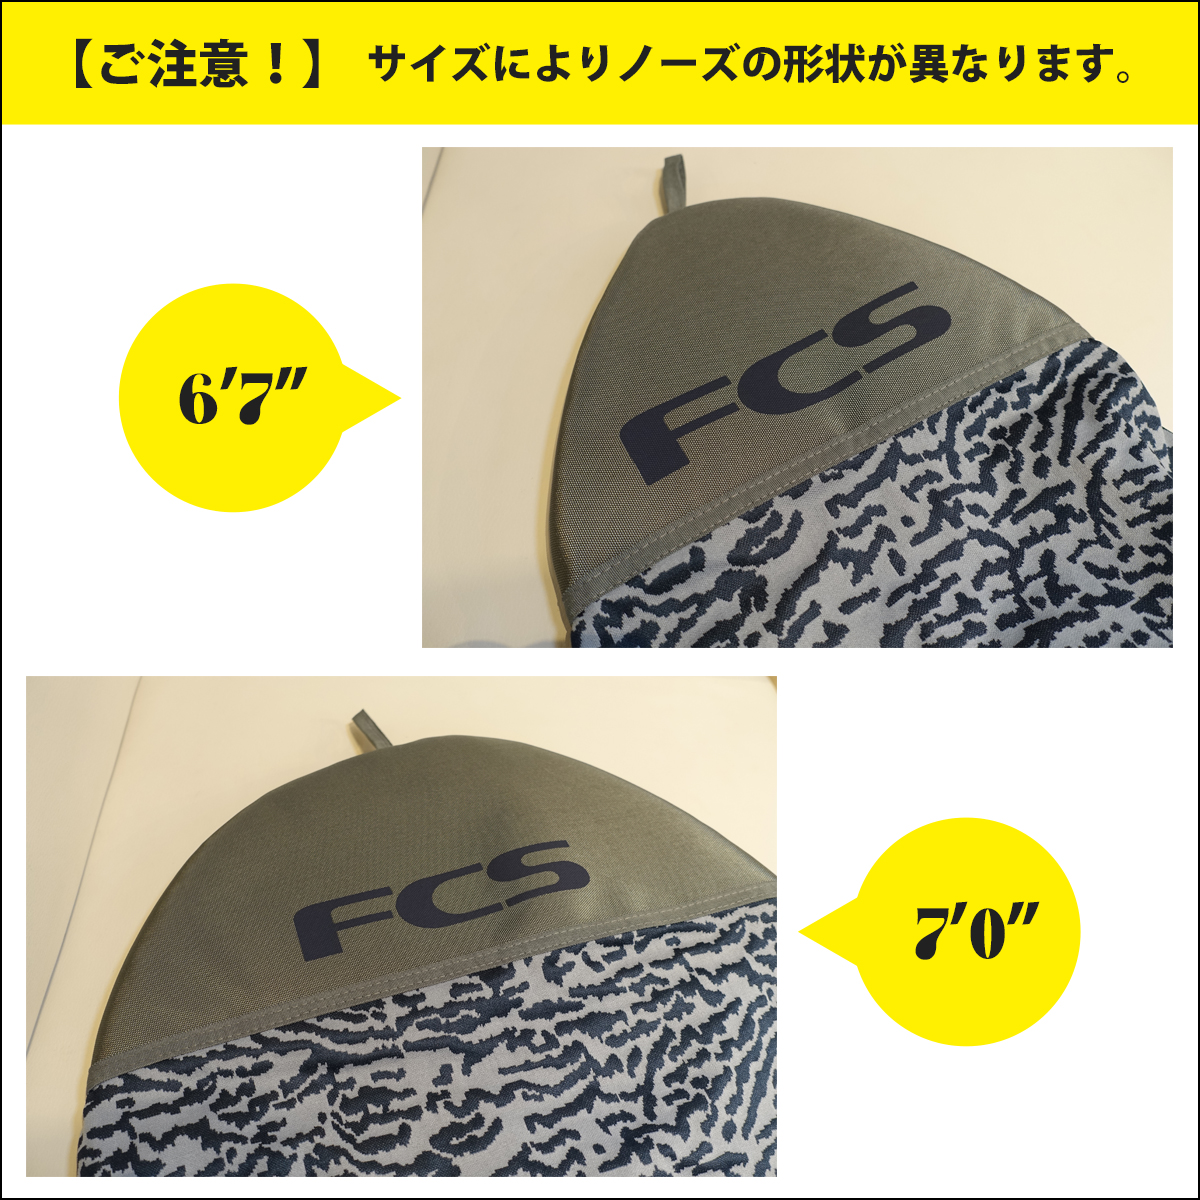 24 FCS ニットケース ボードケース STRETCH FUN BOARD COVER 6’7” 7’0” ストレッチ ファンボード カバー  サーフボード ケース 日本正規品